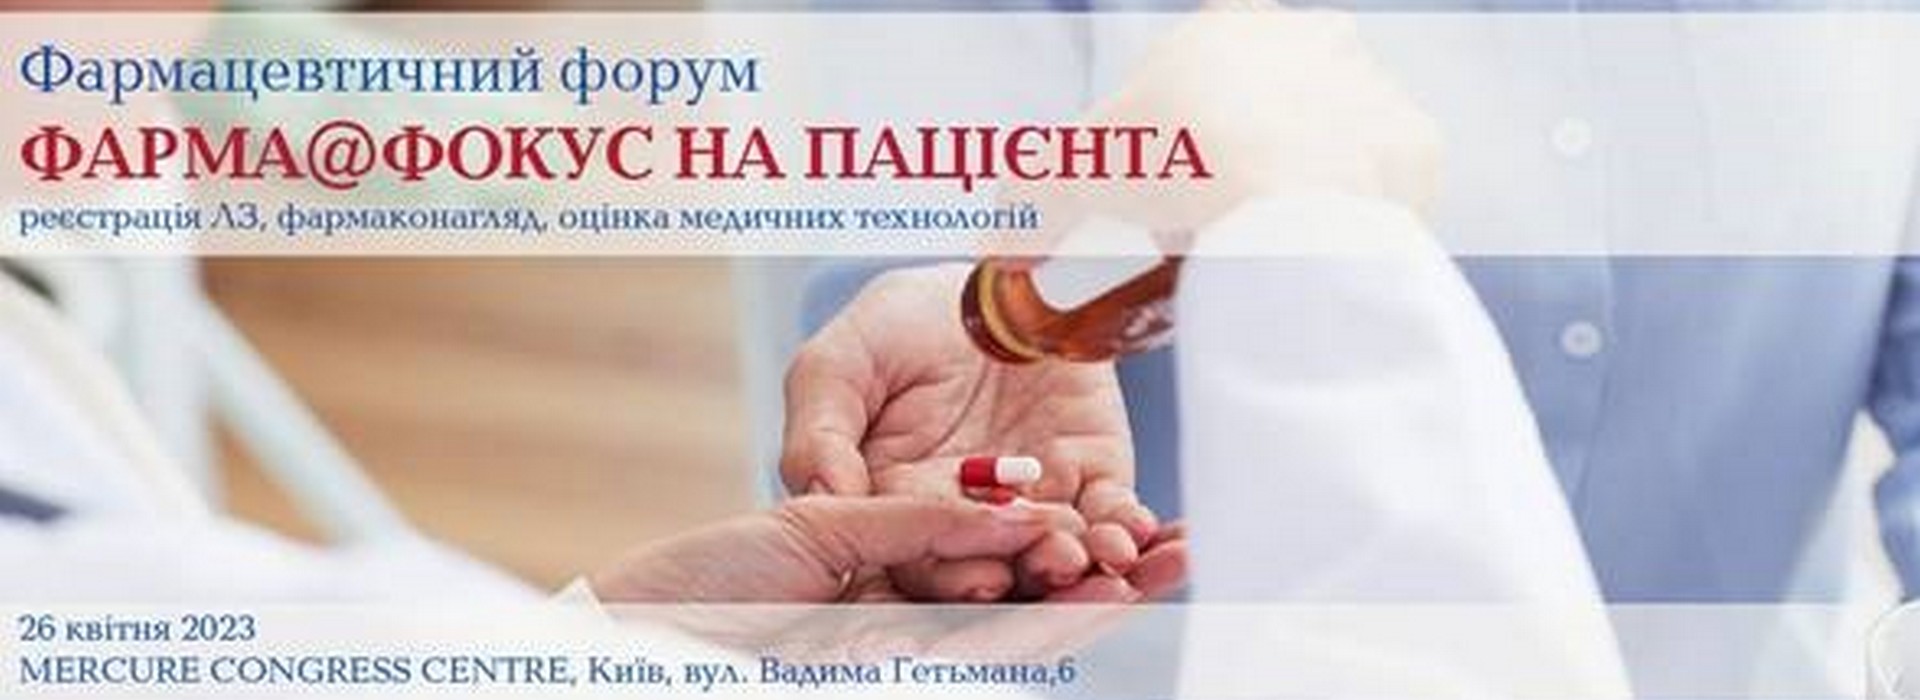 Pharmaceutical Forum 